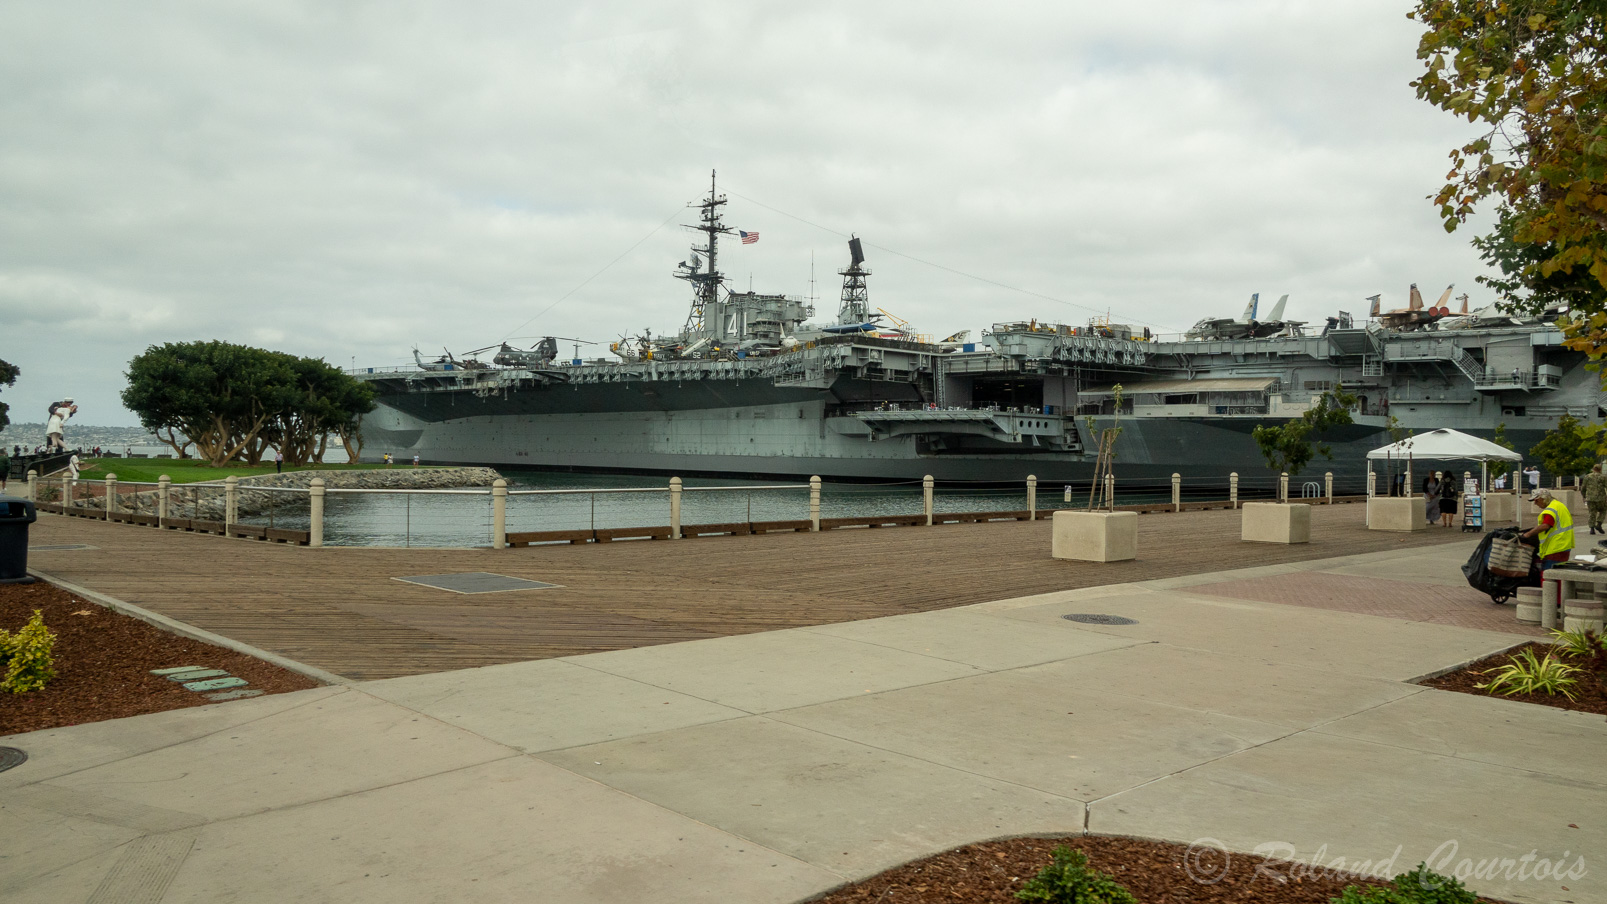 Le porte-avion USS Midway ne navigue plus et devenu un musée.